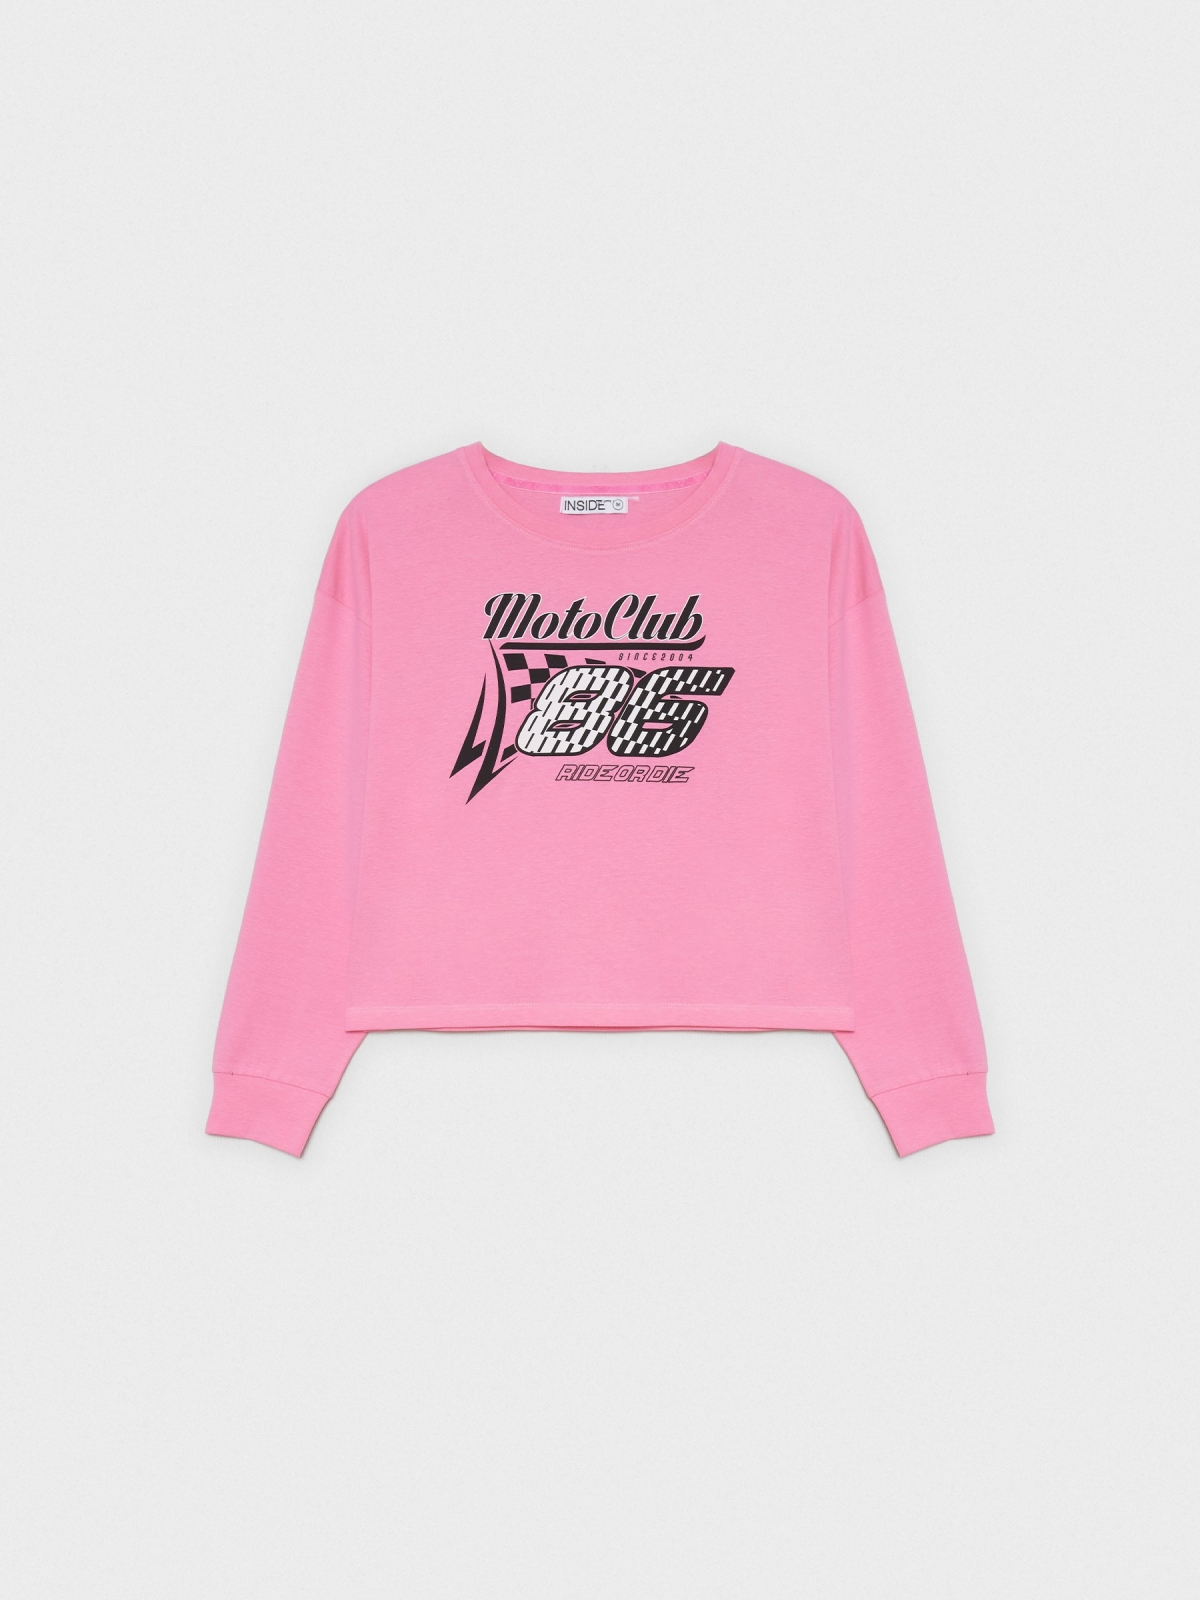  Camiseta crop Moto Club rosa